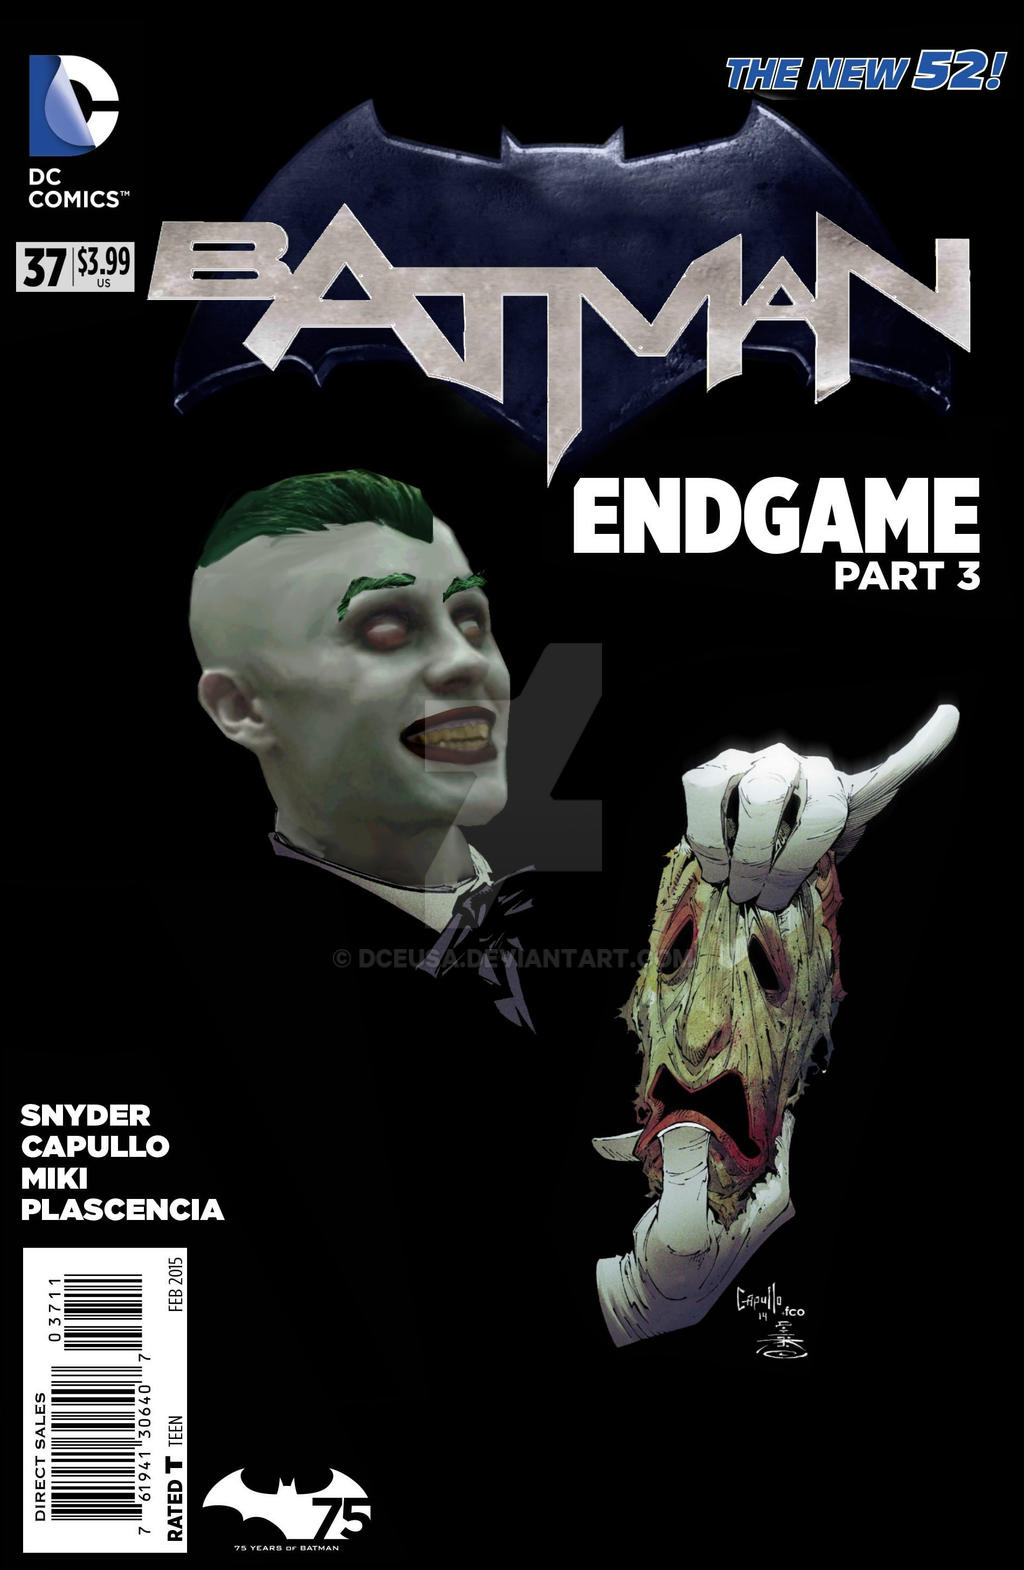 Jared Leto Joker Cover Batman 37 Endgame Part 3 by dceusa on DeviantArt